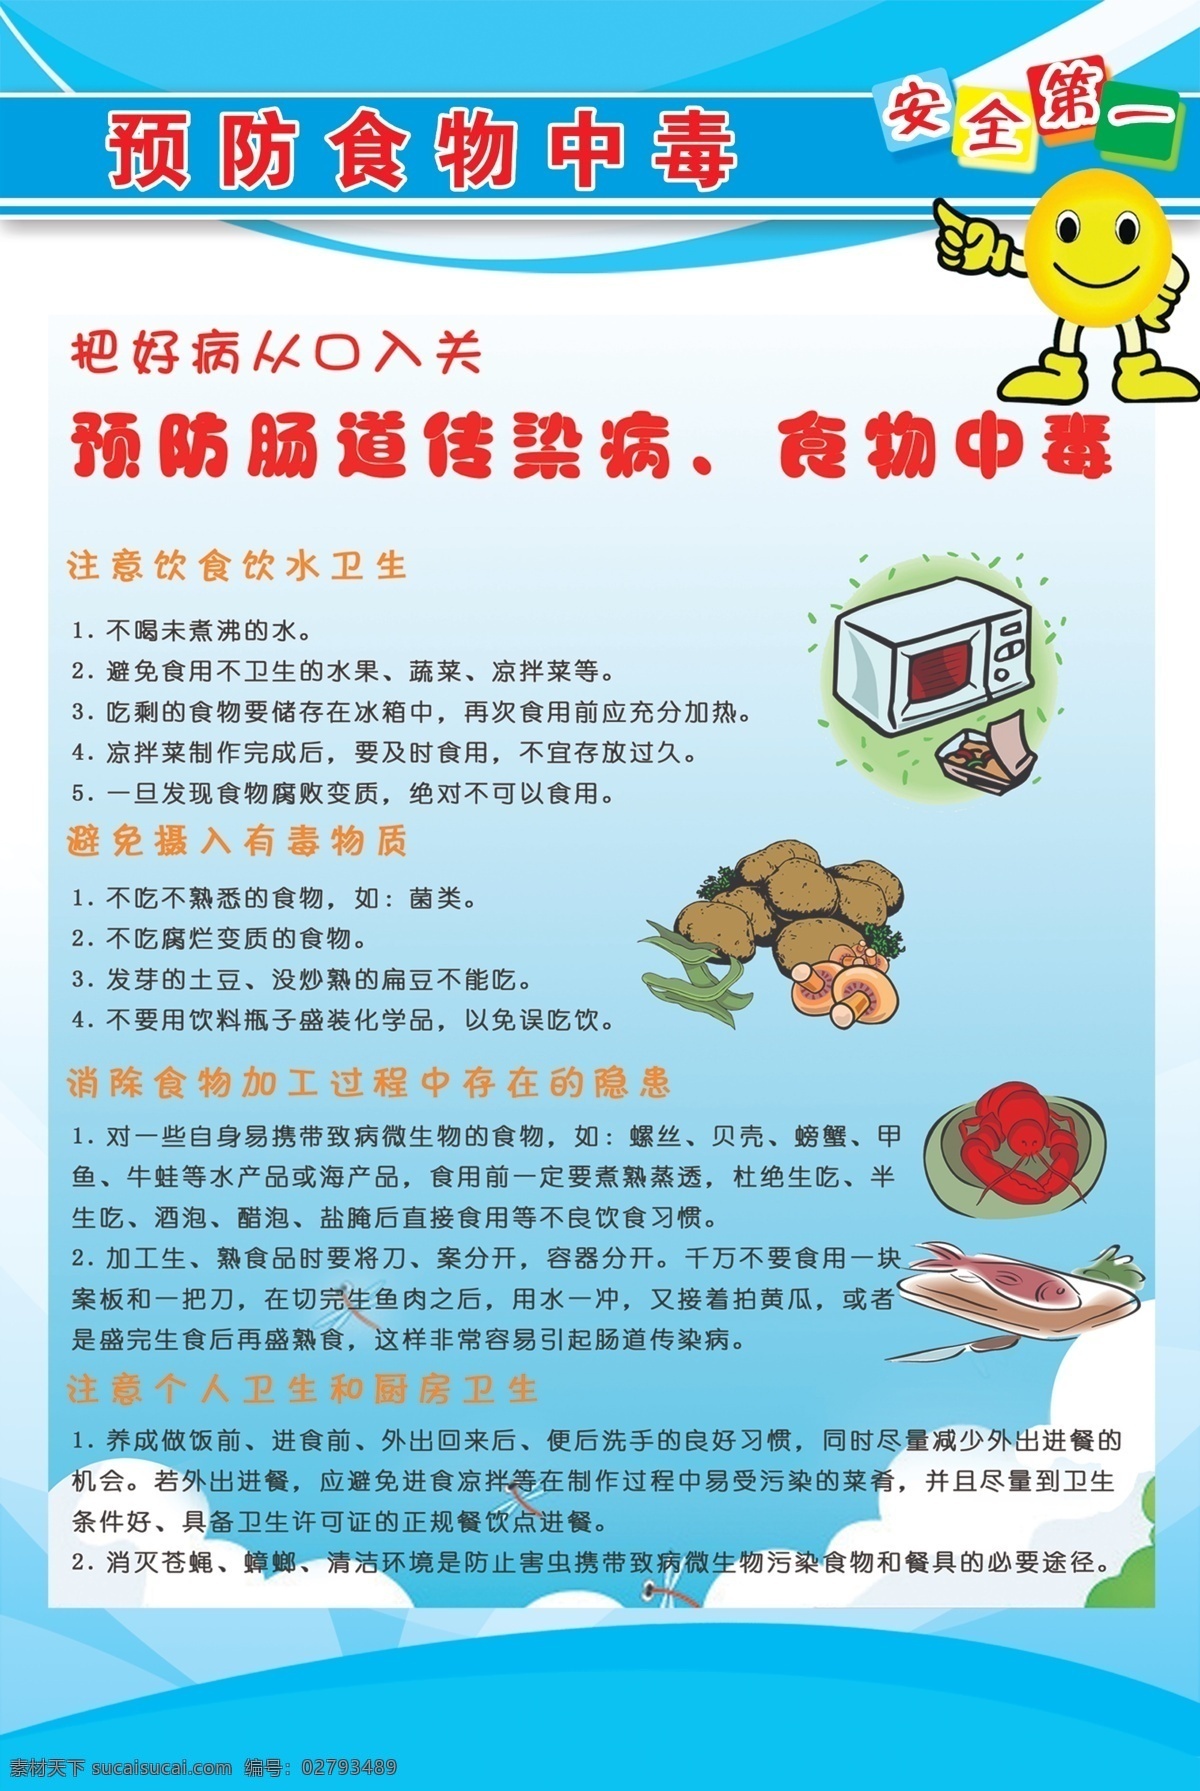 预防 食物中毒 展板 小鱼 龙虾 盘子 蘑菇 蔬菜 中文字 卡通 电视机 蓝色渐变背景 展板模板 广告设计模板 源文件